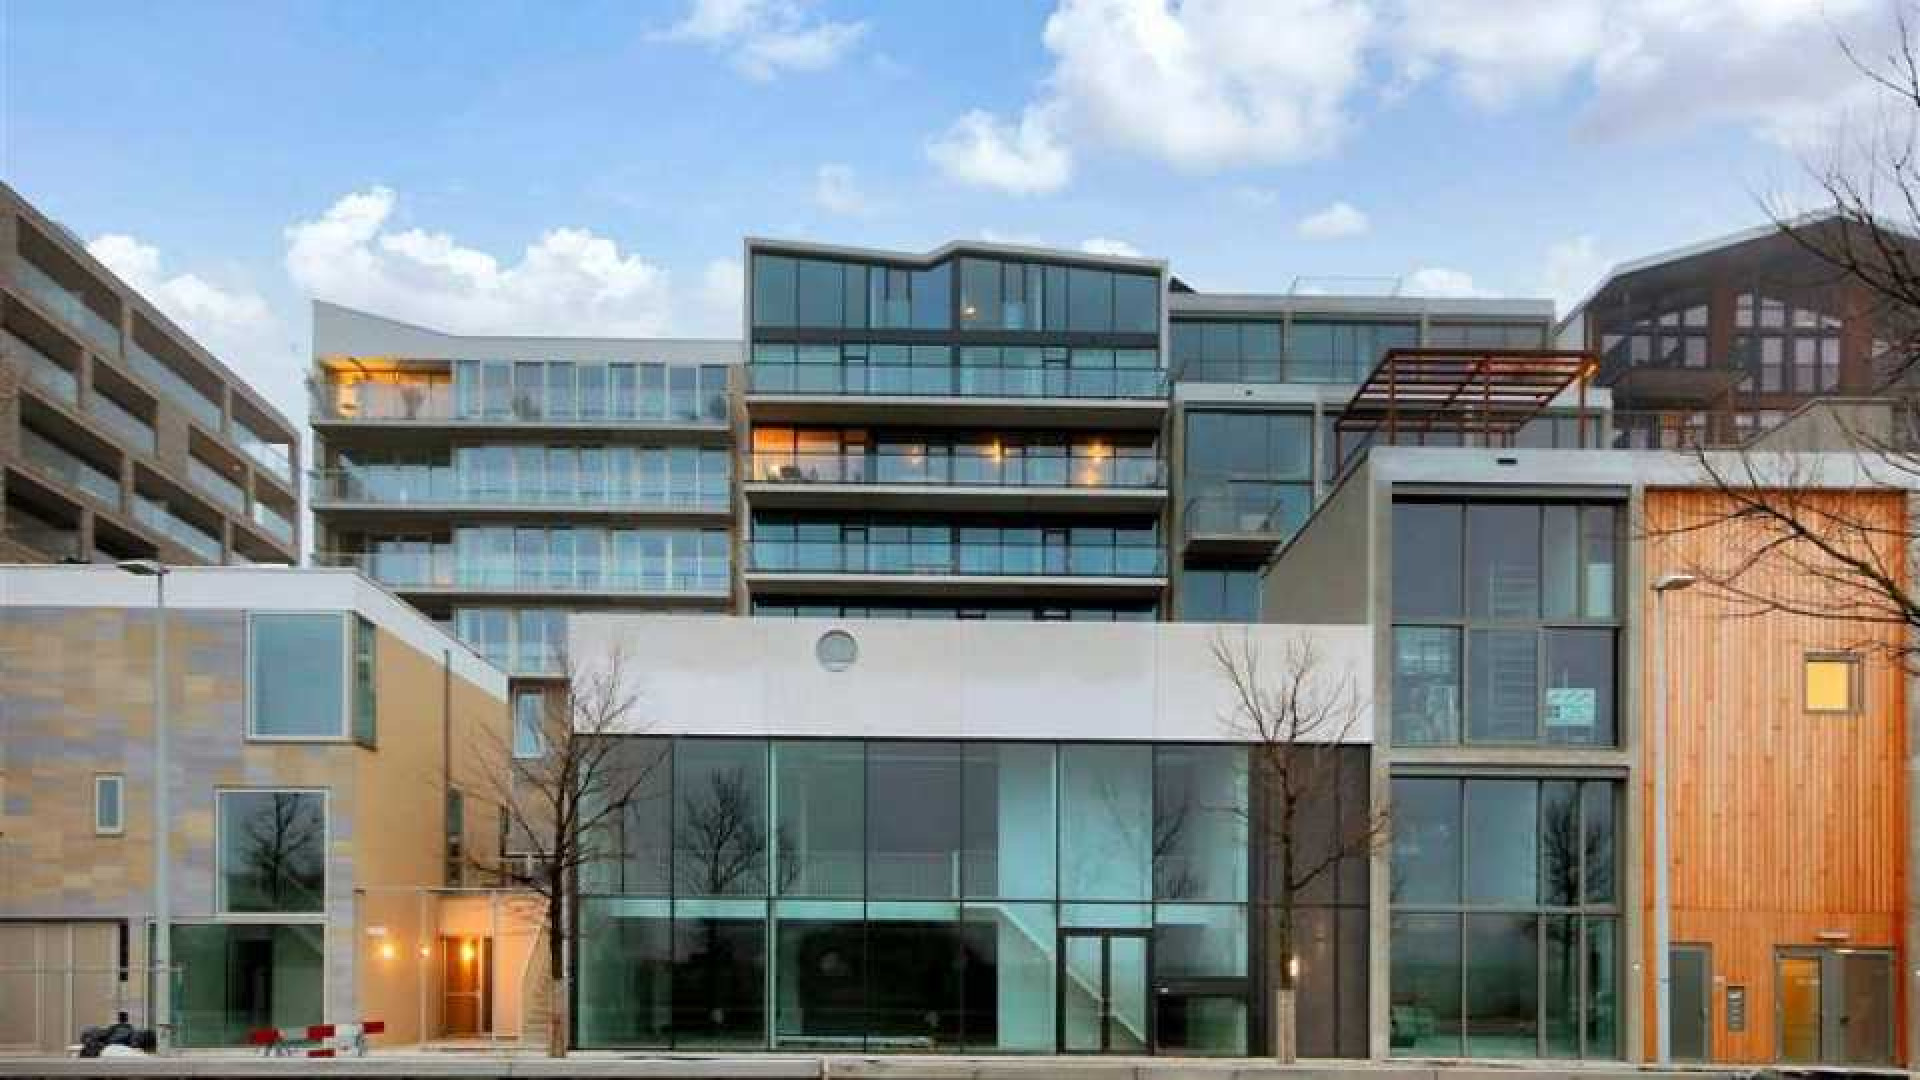 Ruben Nicolai koopt luxe en bijzonder appartement van bijna 1 miljoen euro. Zie foto's 1